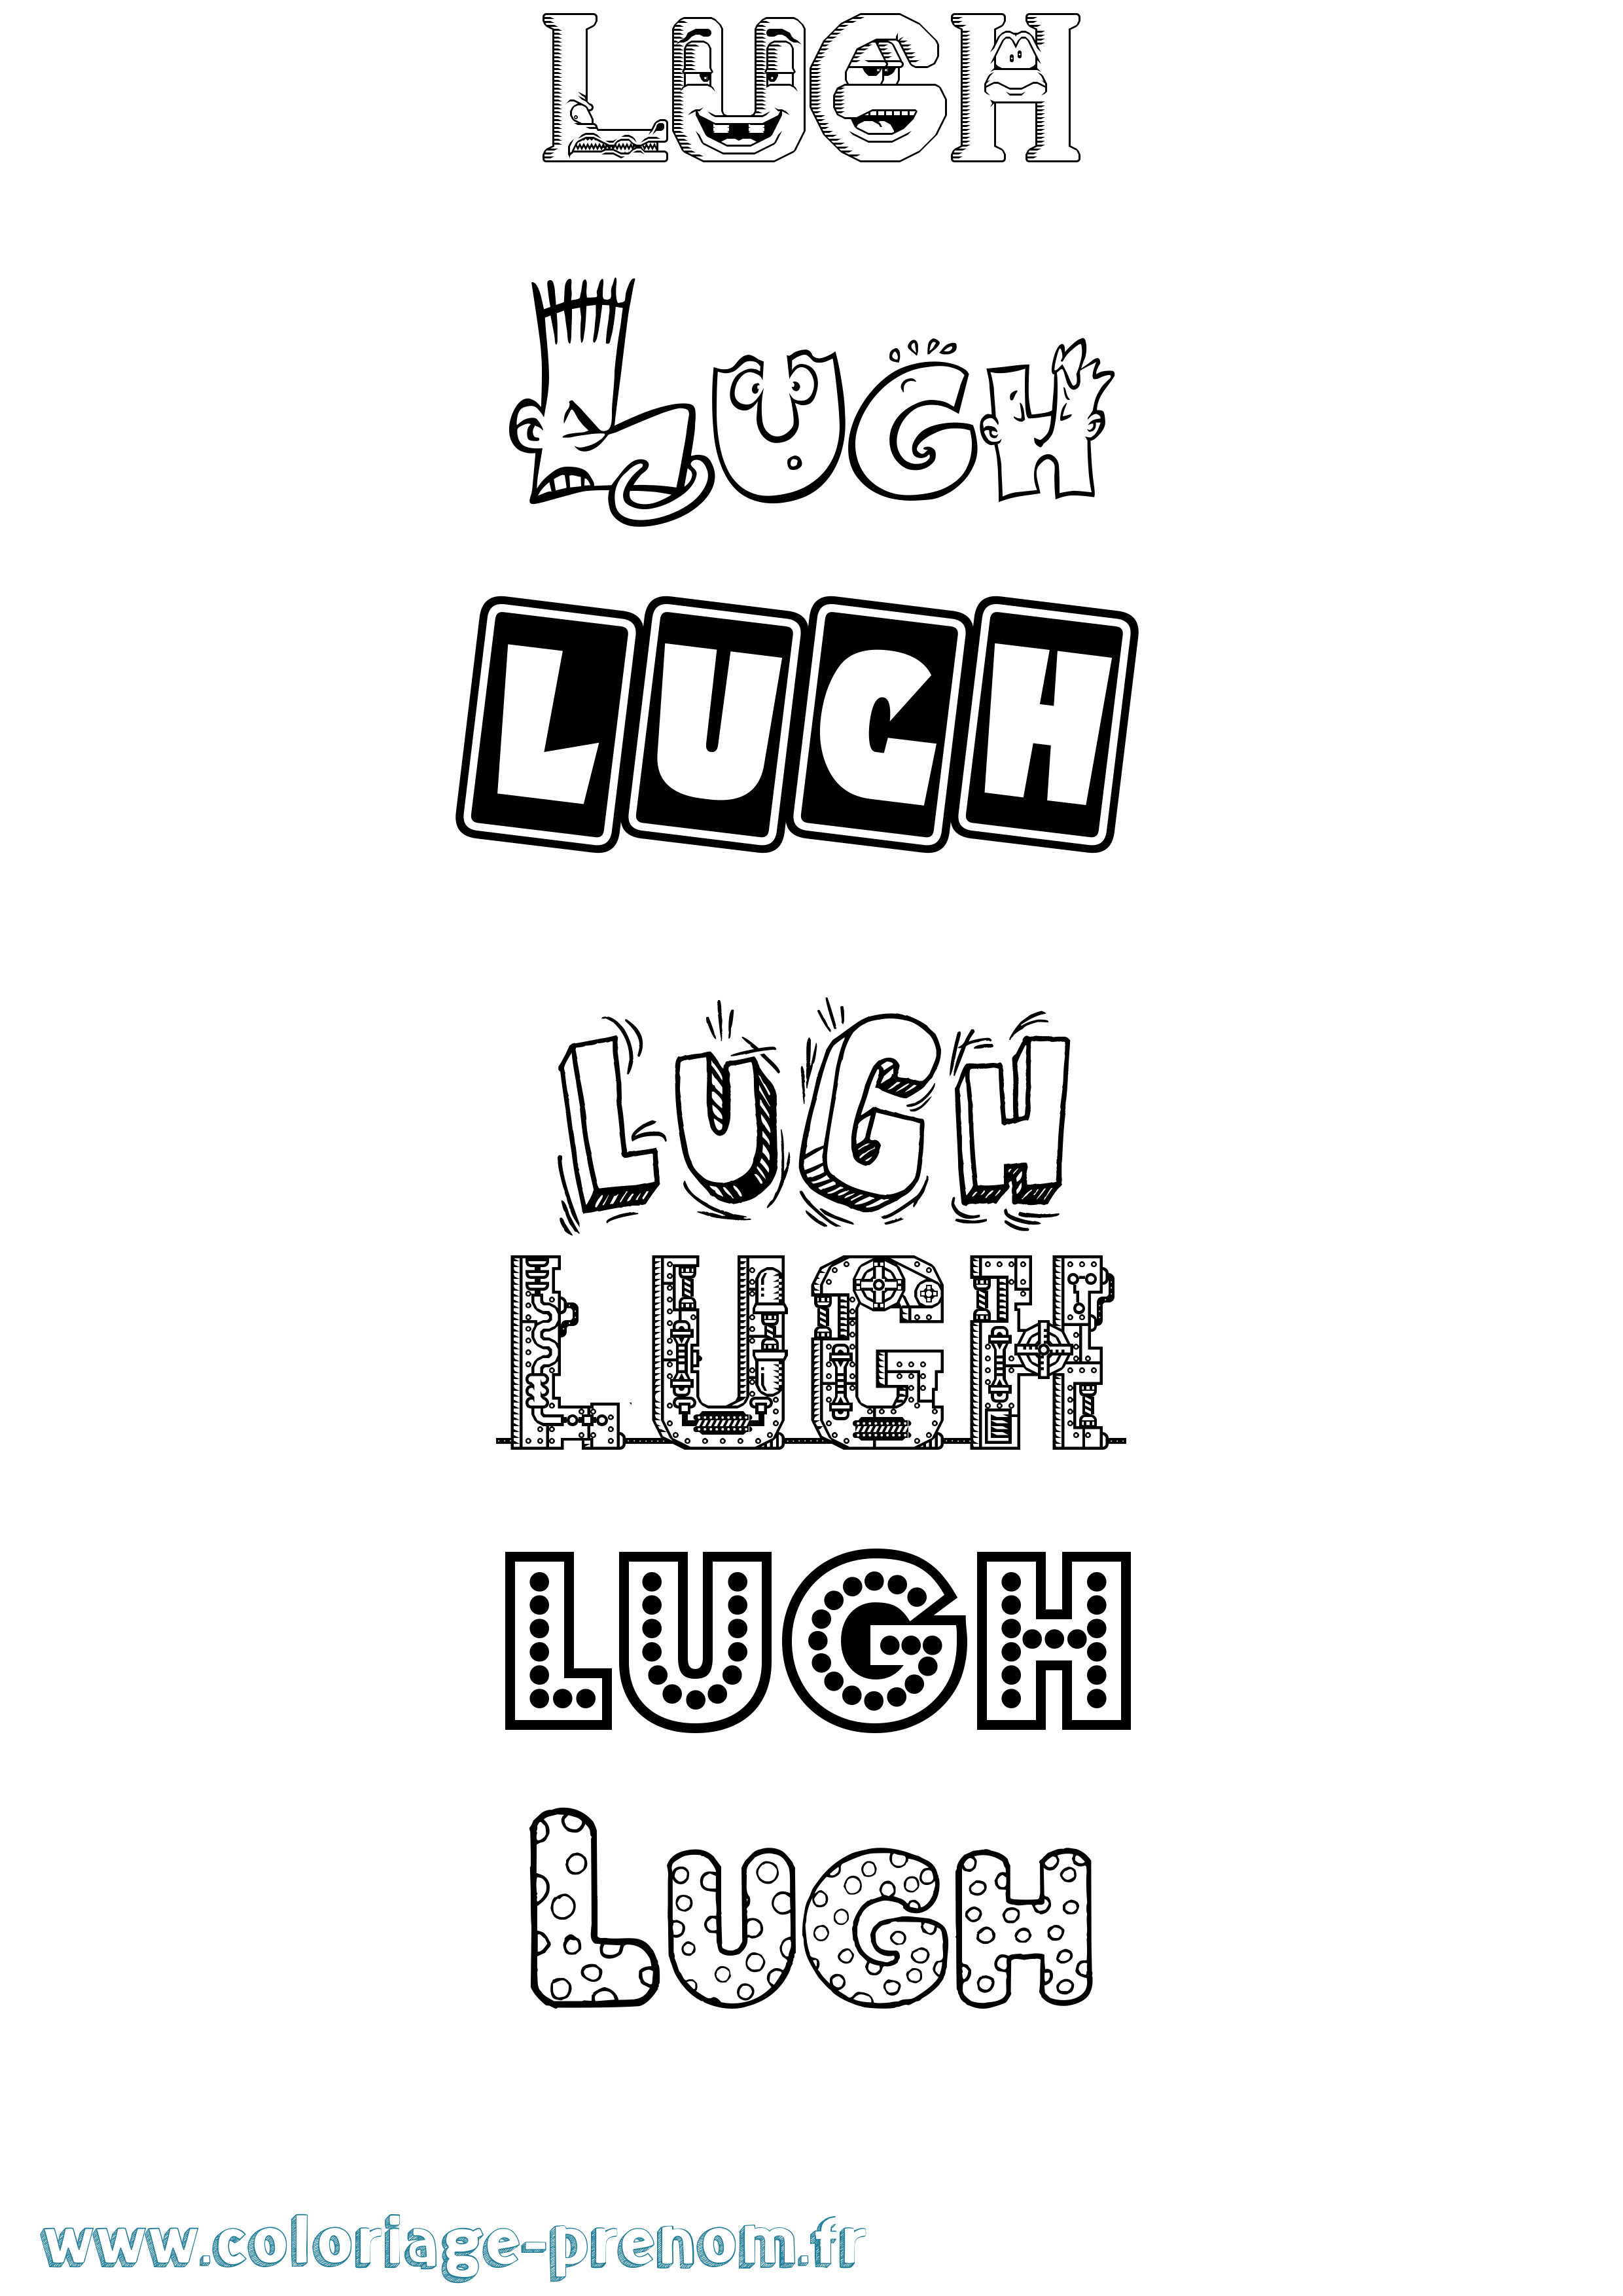 Coloriage prénom Lugh Fun